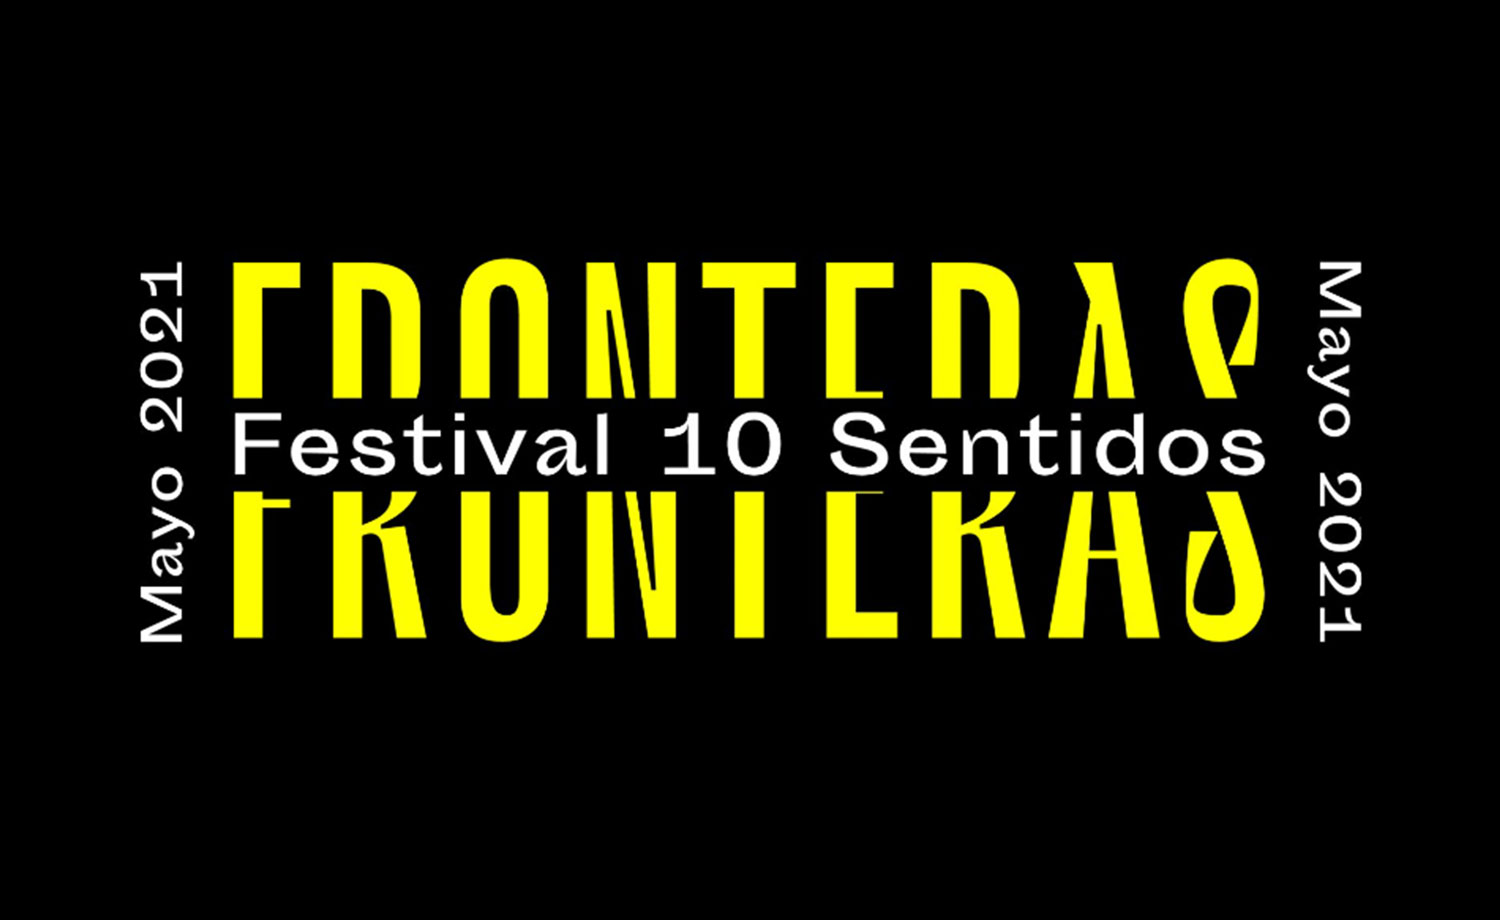 Festival 10 Sentidos Fronteras 2021